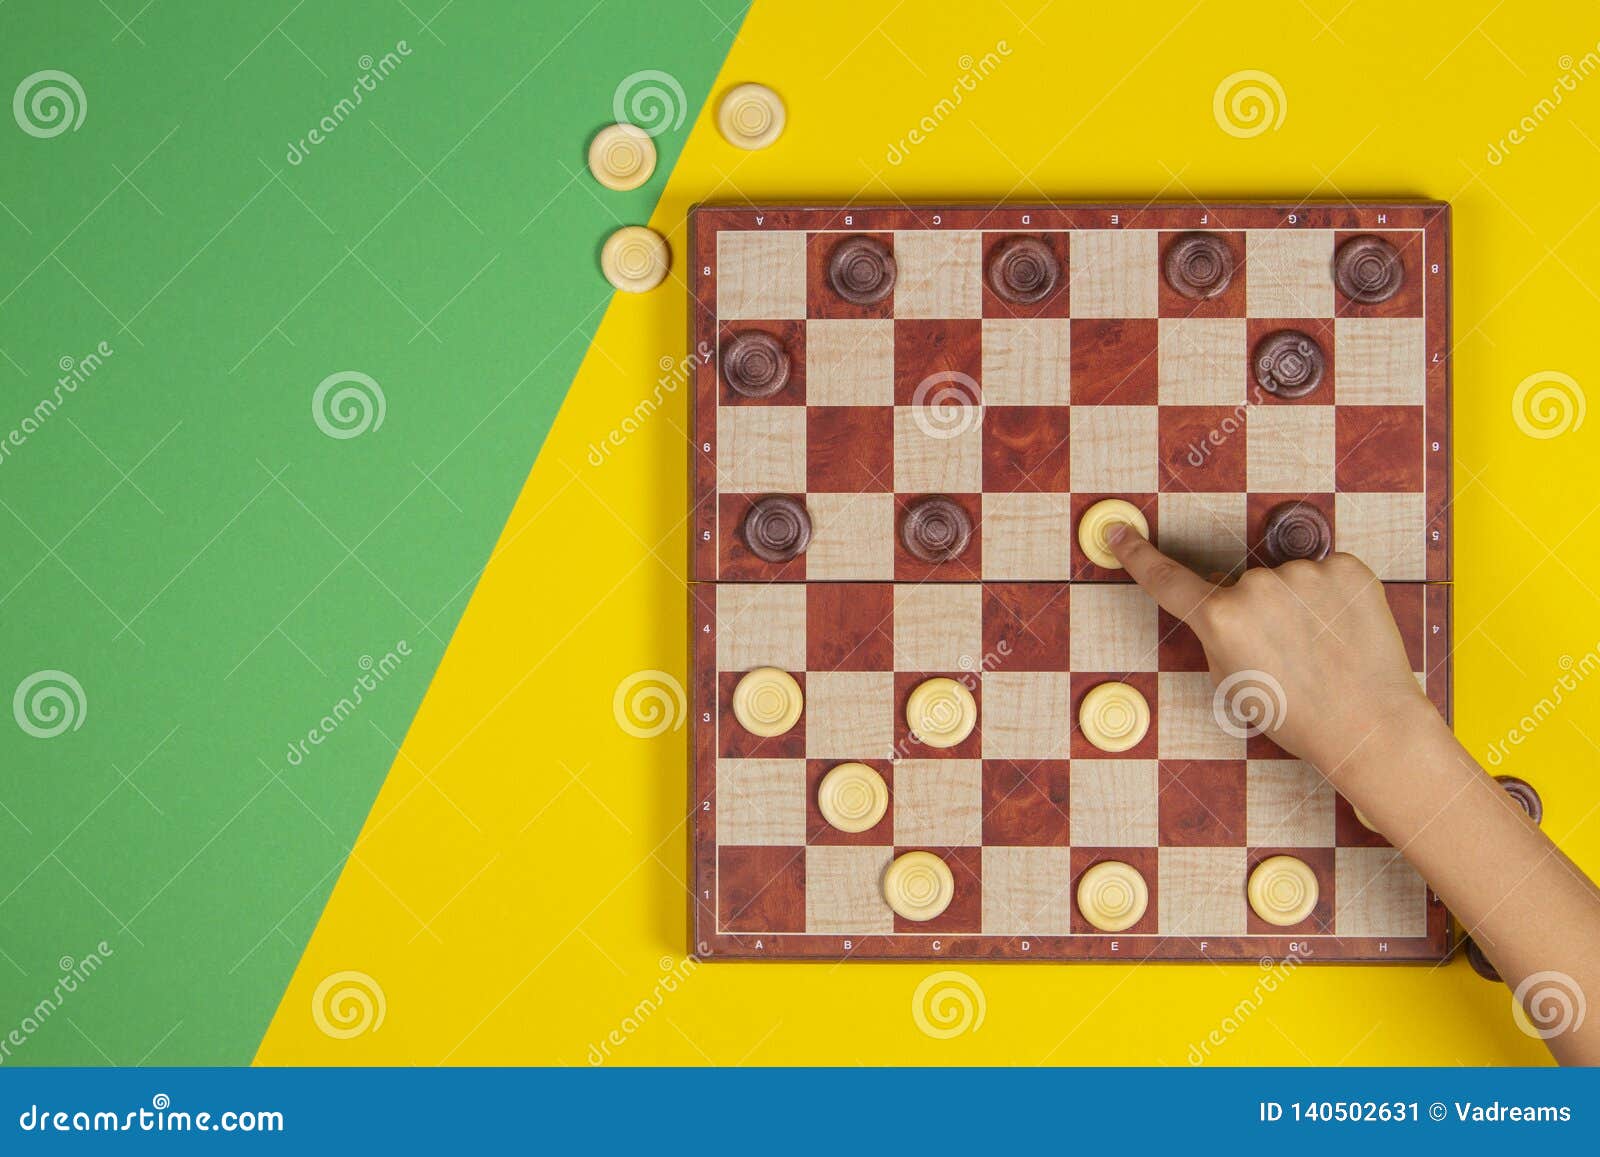 Equipa a Mão Que Joga Um Jogo De Xadrez Foto de Stock - Imagem de lazer,  batalha: 35244498